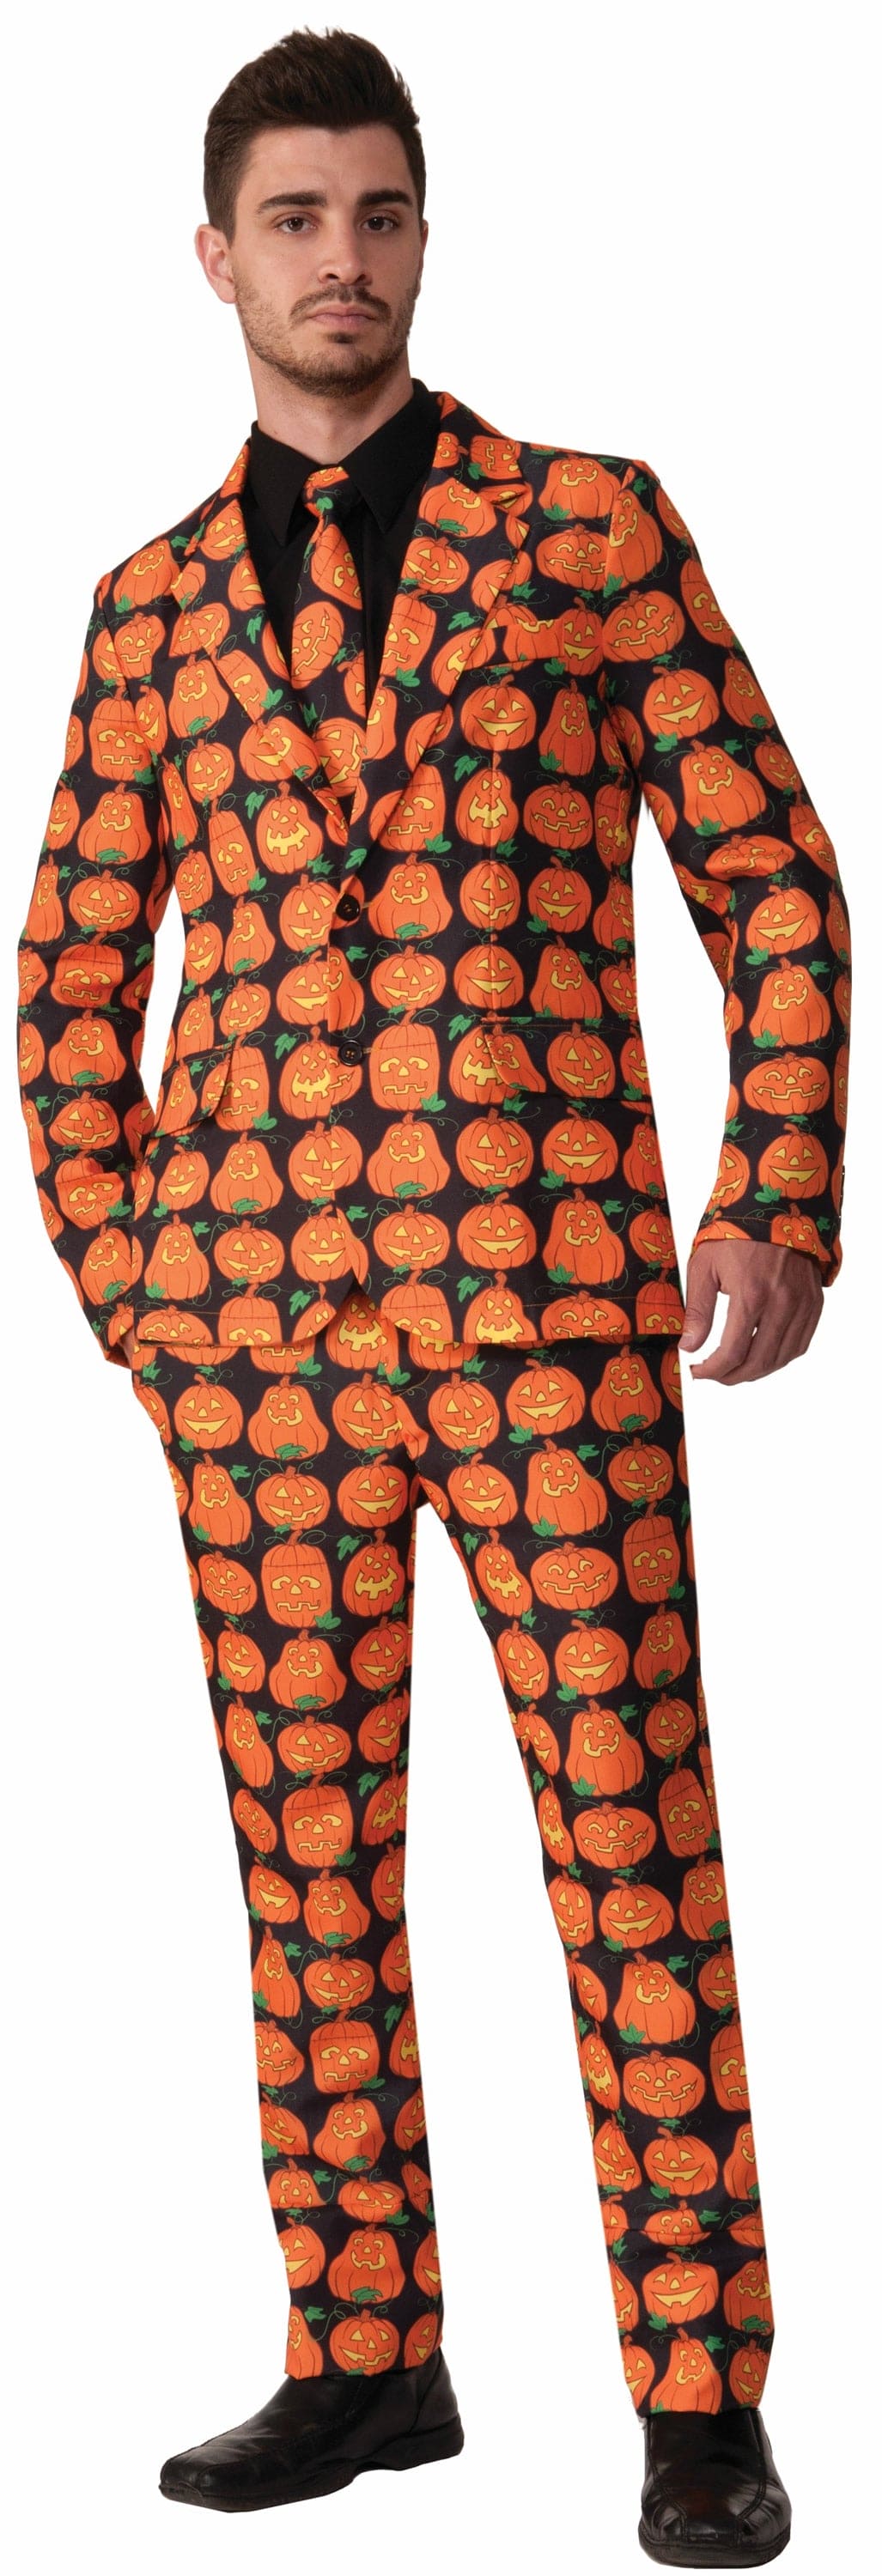 Pumpkin Suit and Tie Costume